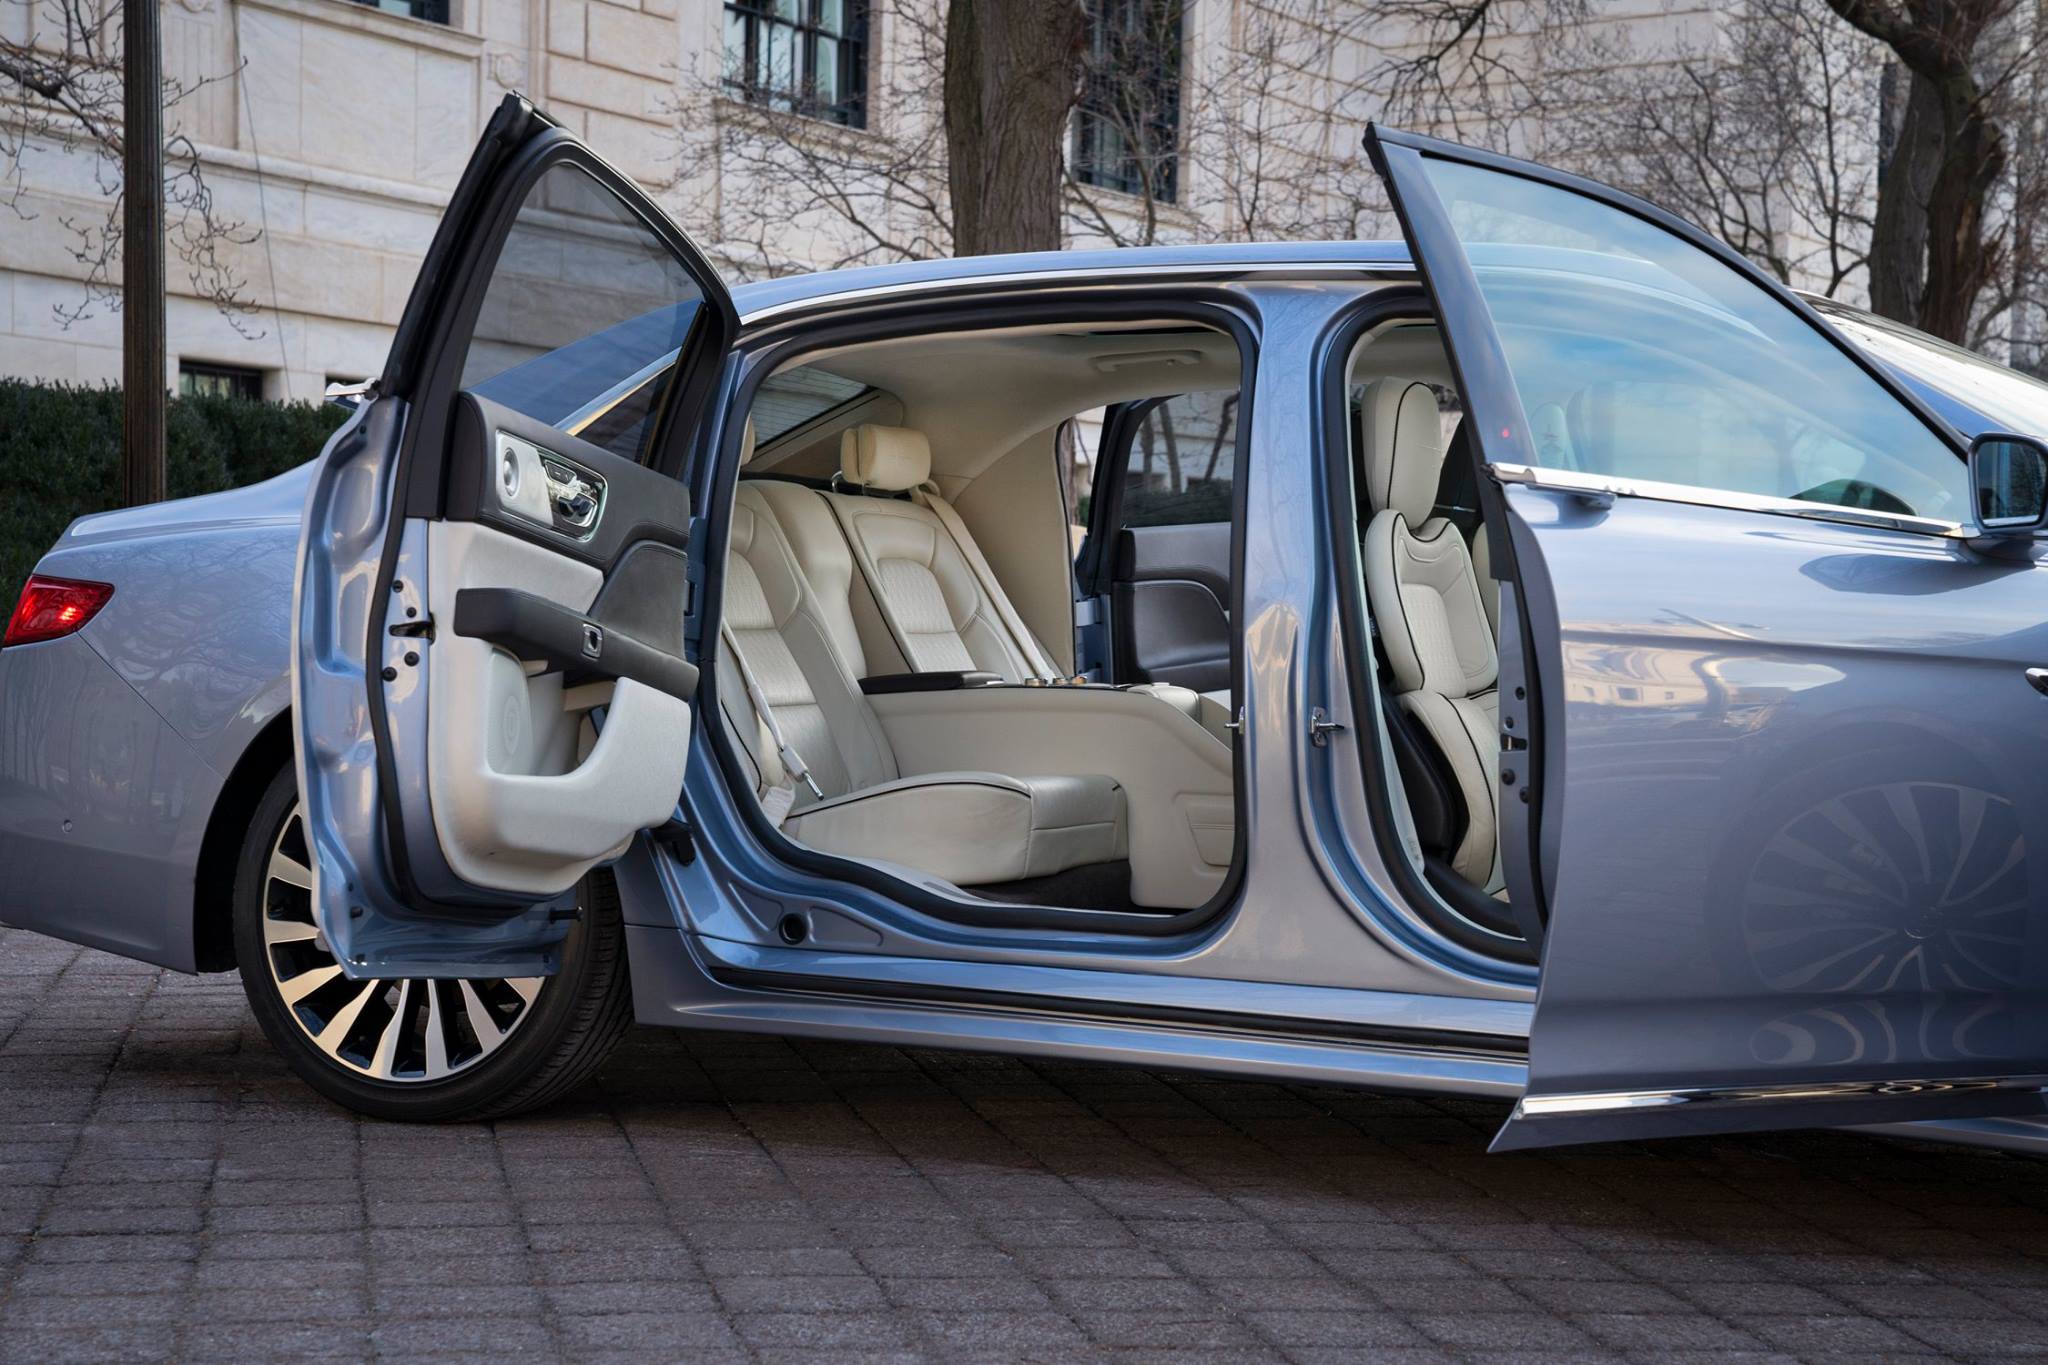 imagen 2 de Lincoln Continental 80th Anniversary Coach Door Edition ¿habrase visto mayor elegancia?